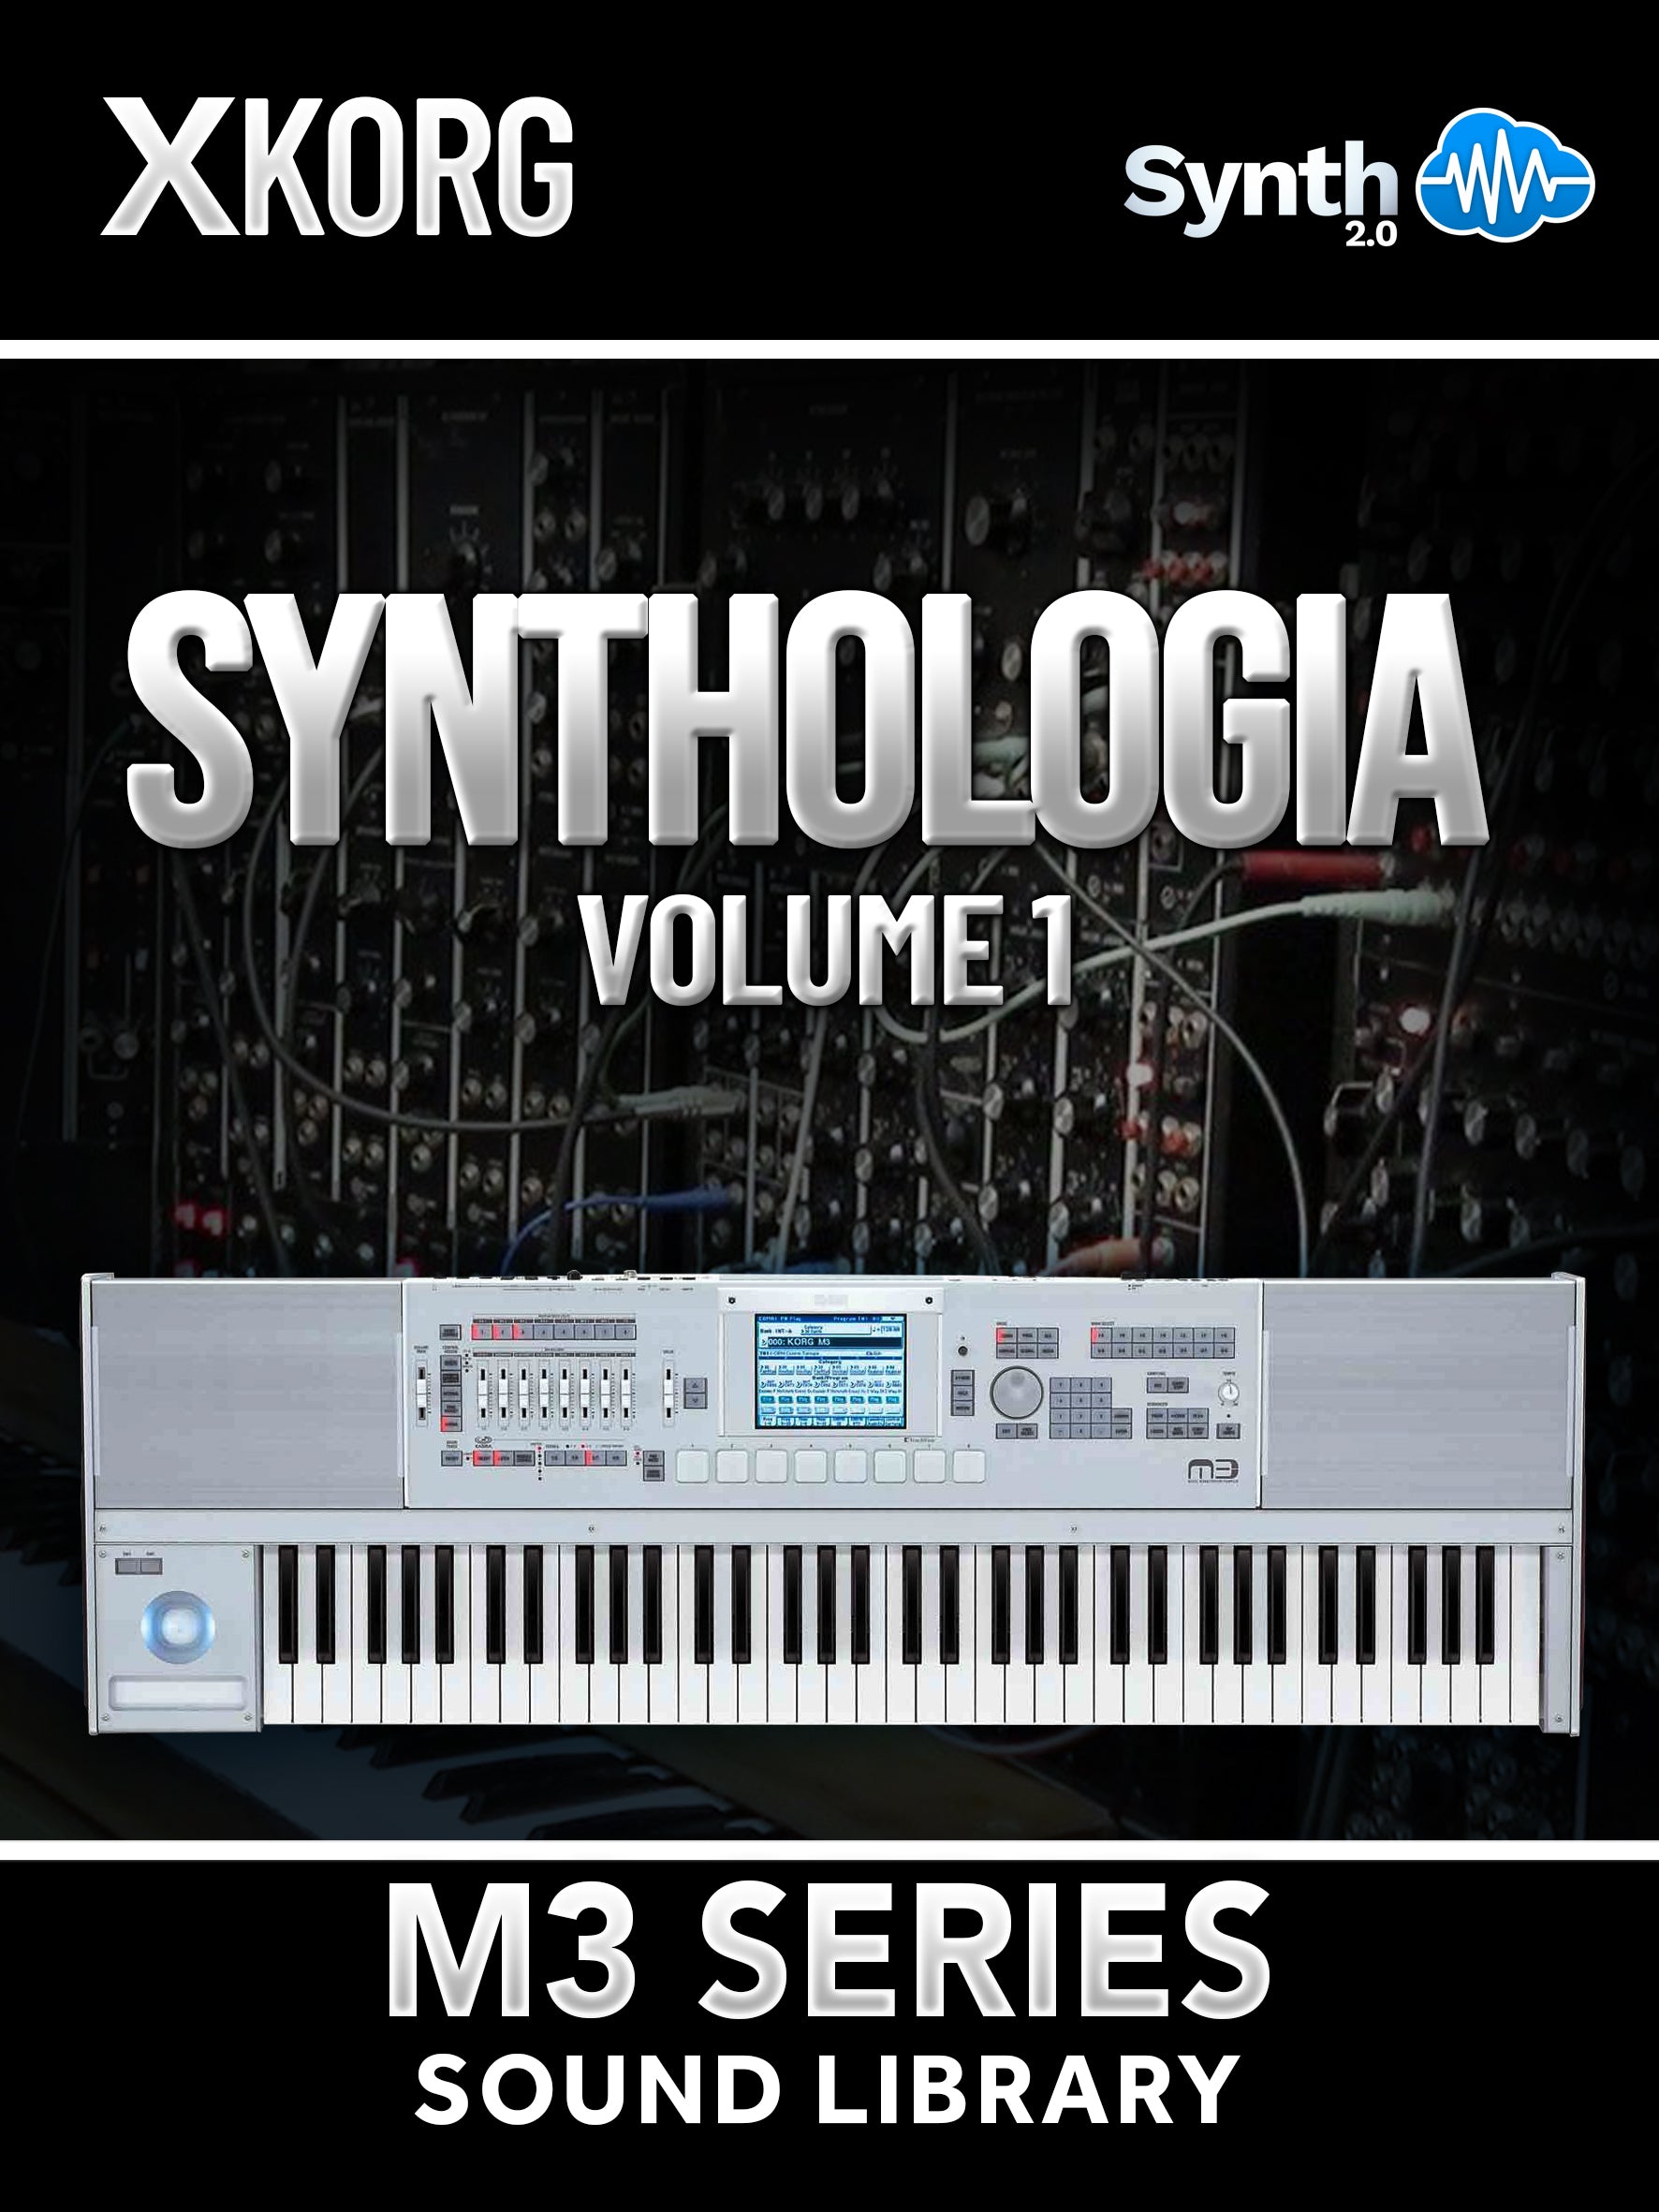 SSX132 - ( Bundle ) - Synthologia V1 + The Endless Floyd Anthology - Korg M3